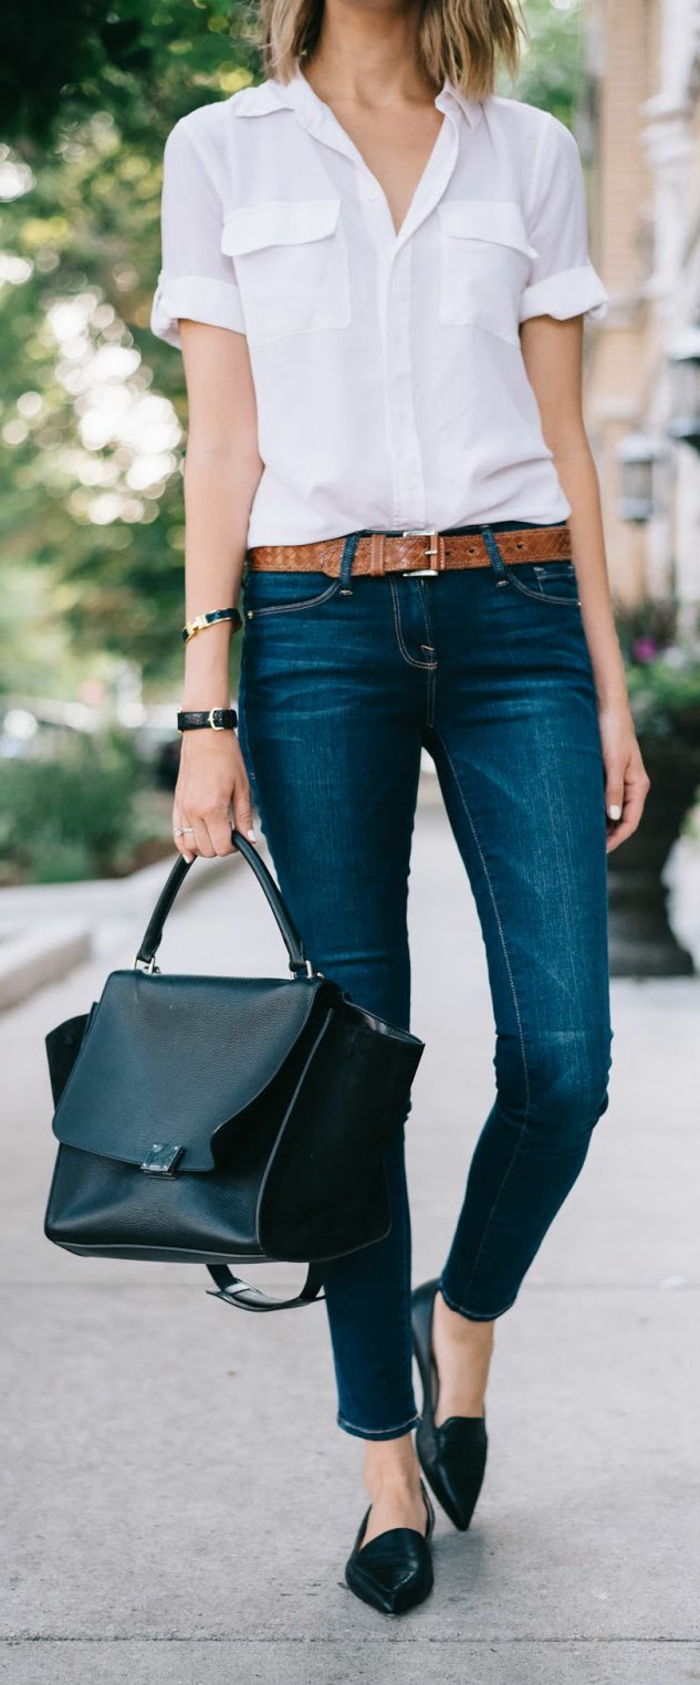 upscale príležitostné oblečenie džínsy s hnedým opaskom biele tričko čierne topánky taška žena